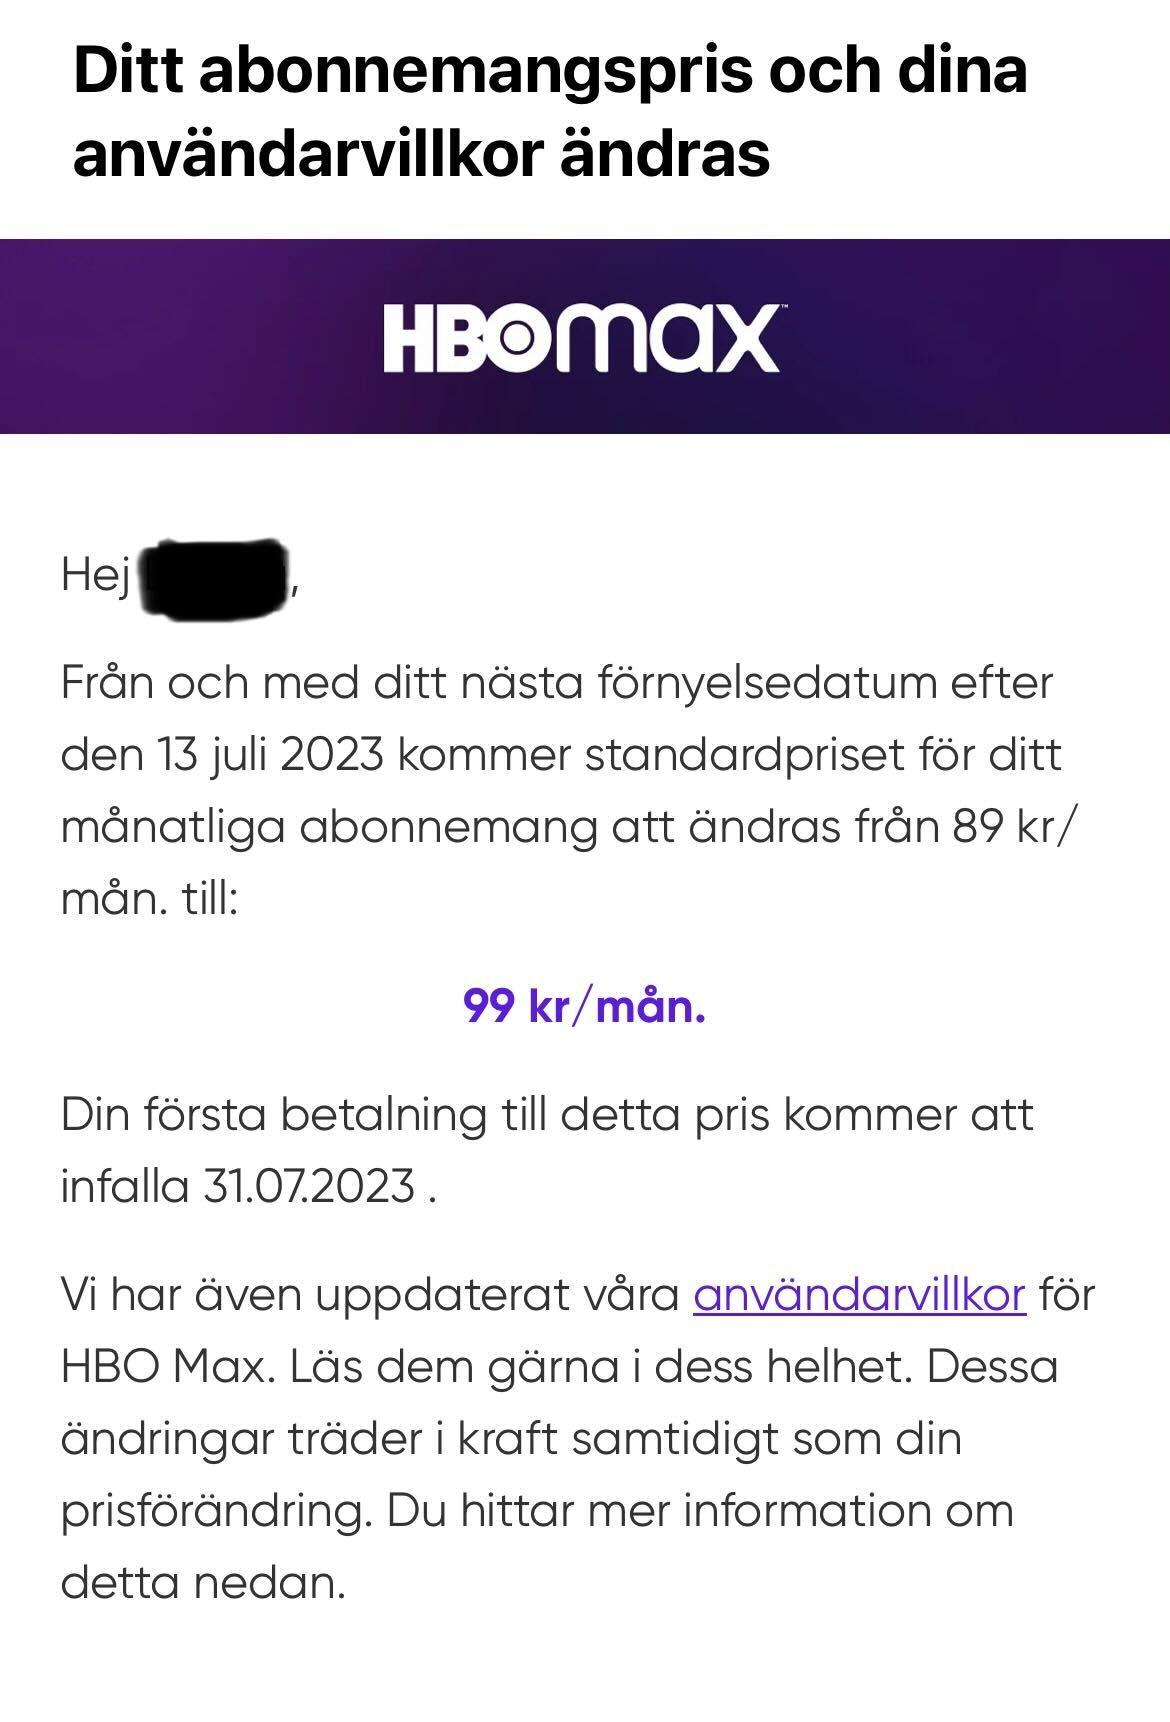 Mailet som gick ut till HBO Max-användare.